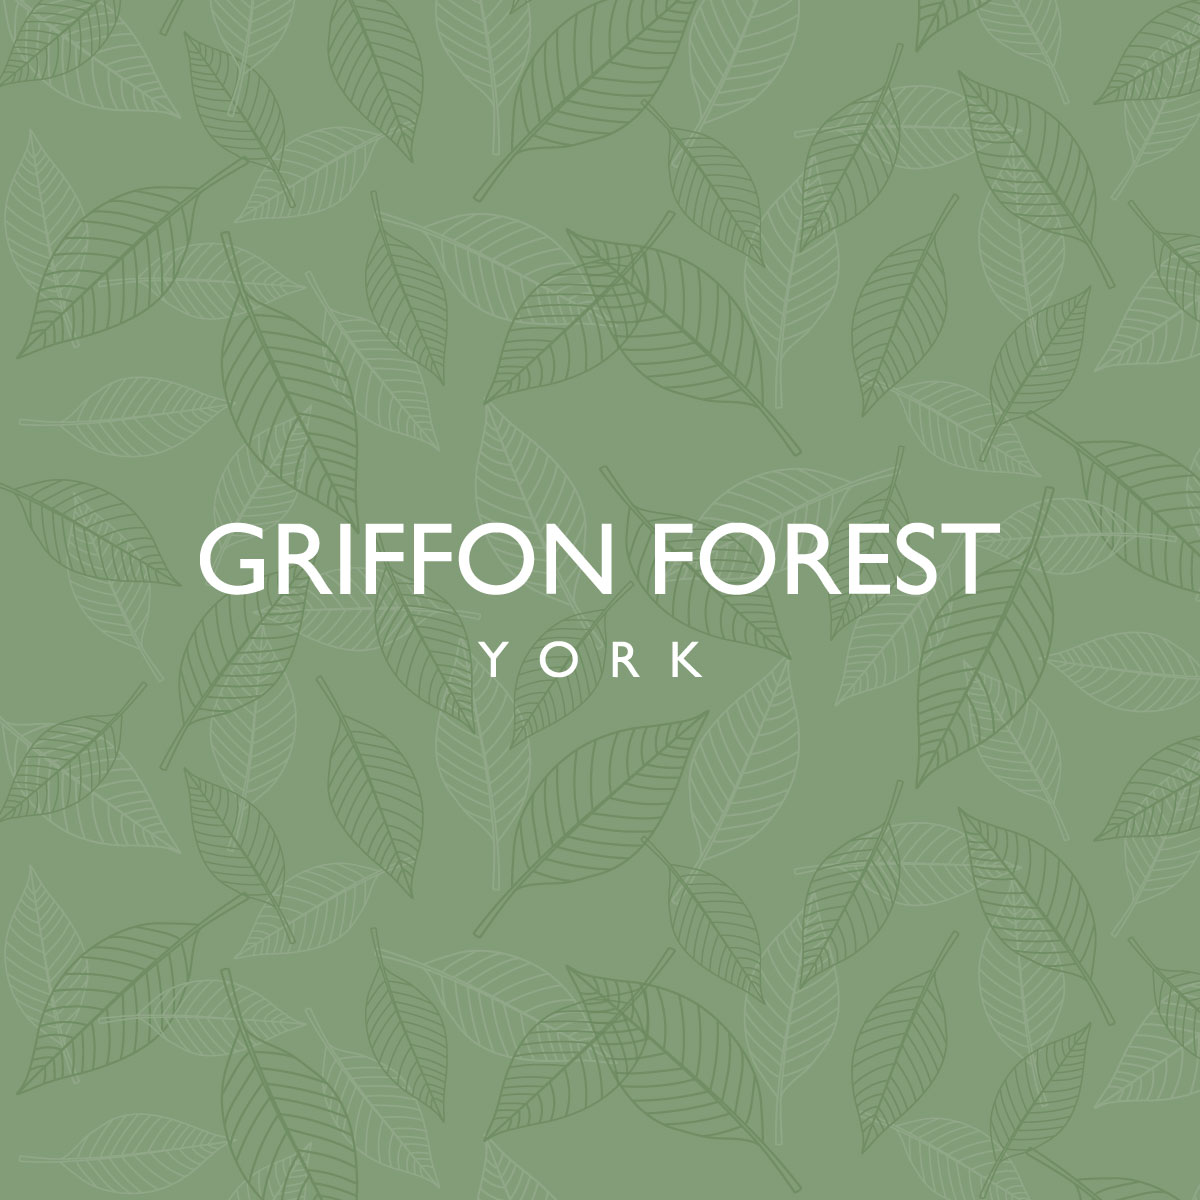 (c) Griffonforest.co.uk